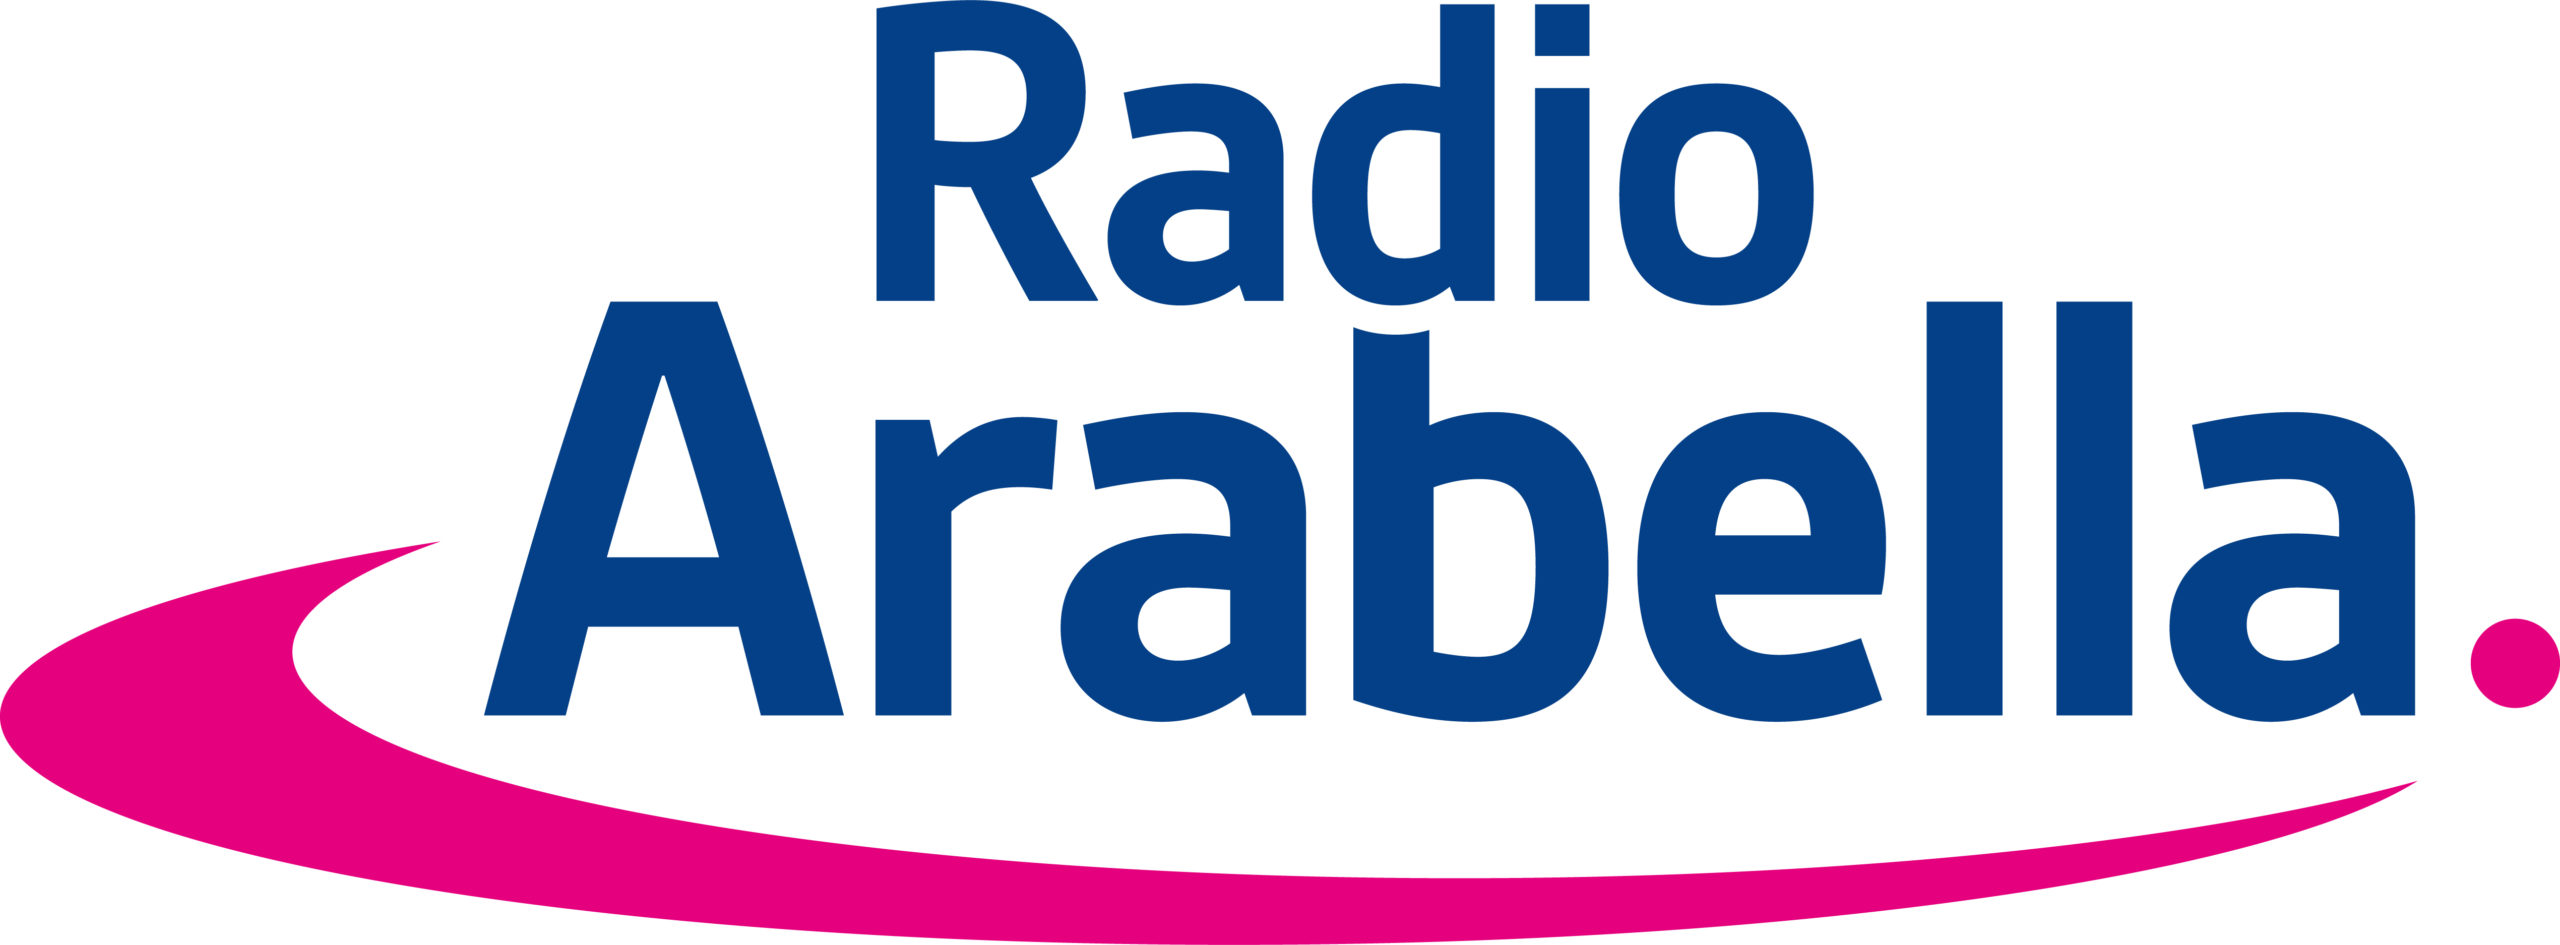 Radio Arabella Logo_RGB